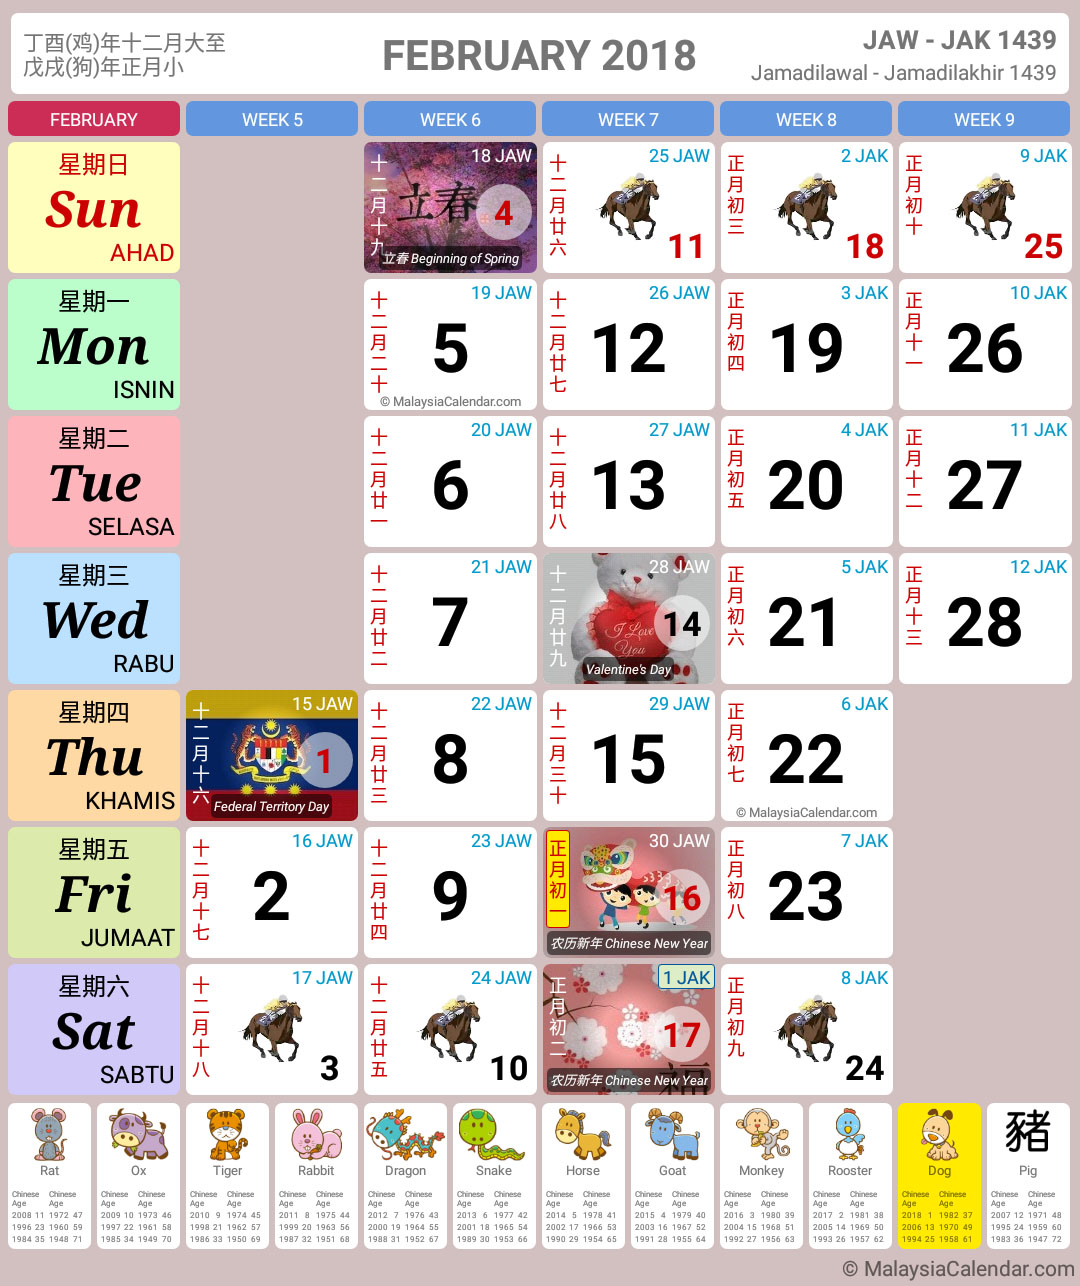 Kalendar Malaysia 2018 (Cuti Sekolah) - Kalendar Malaysia